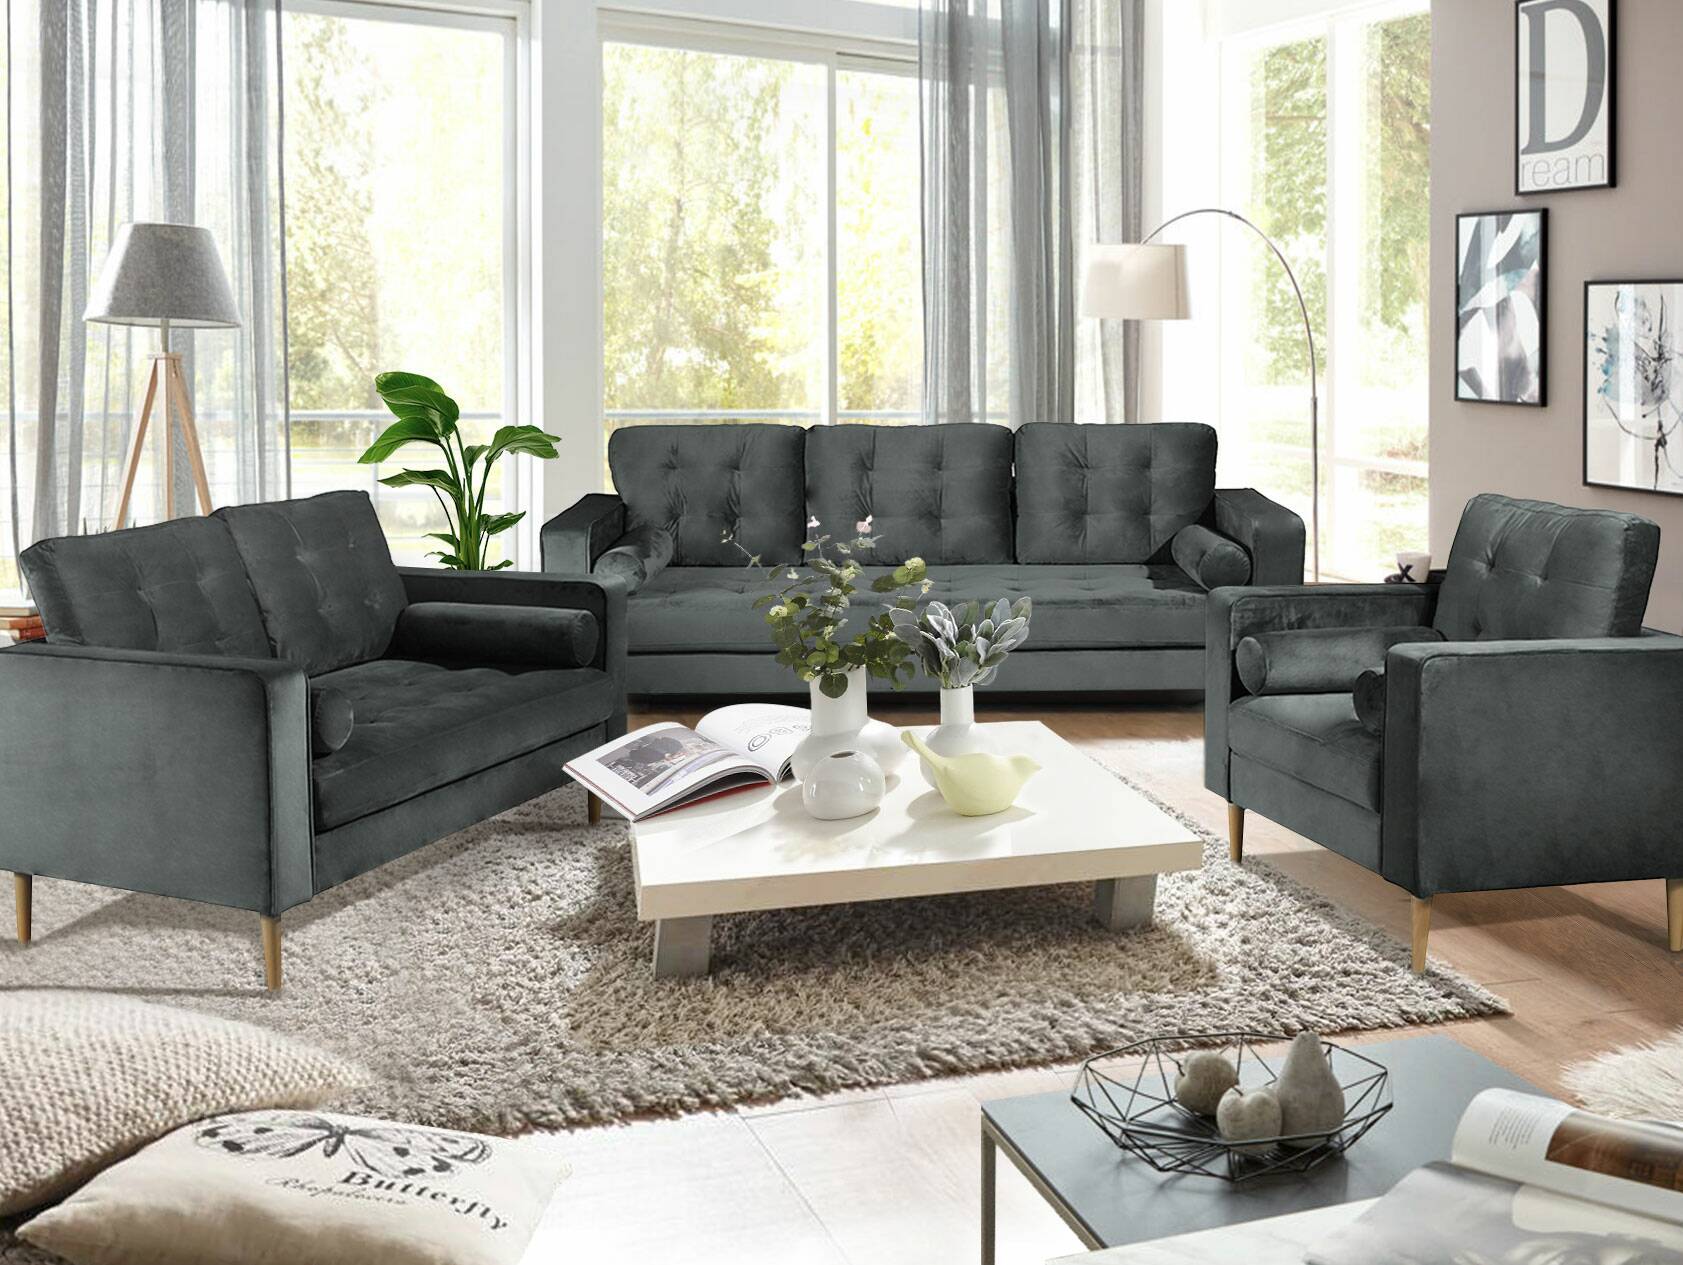 GLAMMY 3-Sitzer Sofa mit Samtbezug, Füße Buche massiv 